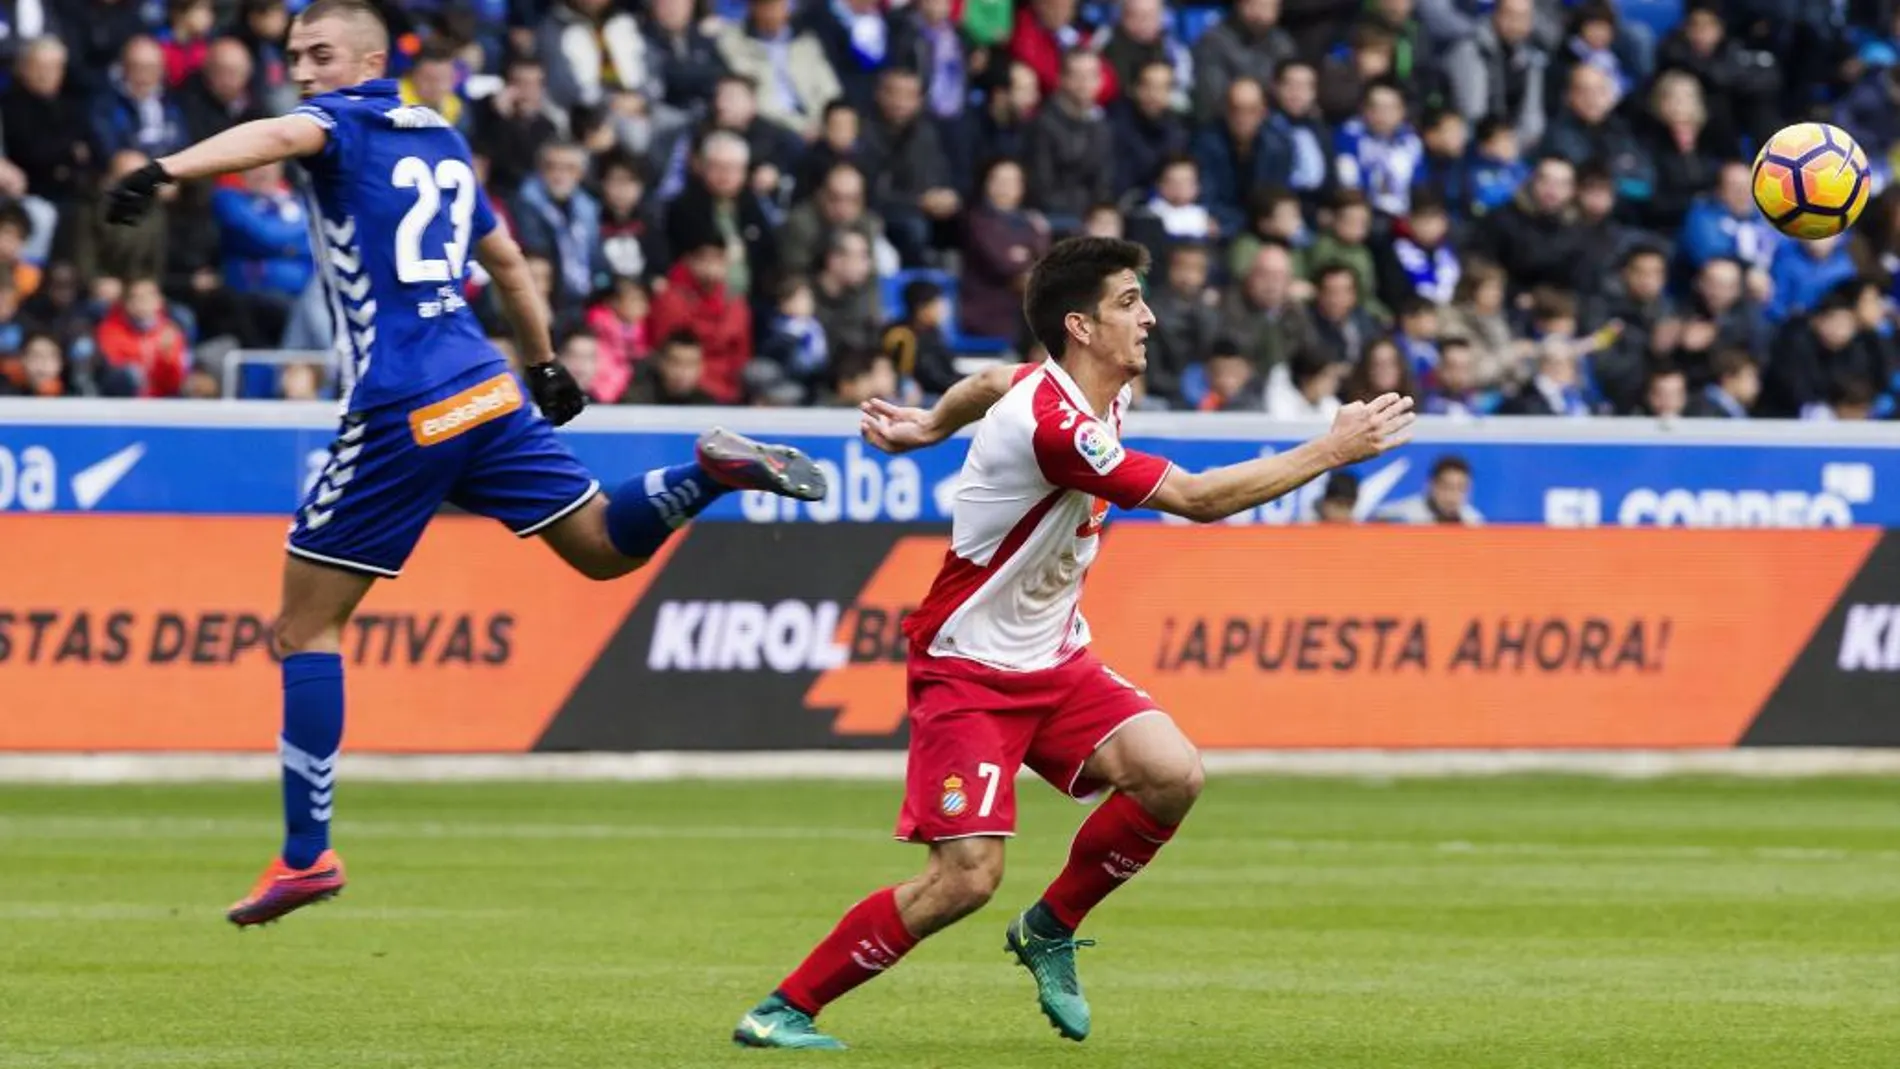 El jugador del RCD Espanyol Gerard lucha por el balón con el jugador del Deportivo Alavés Kristicic